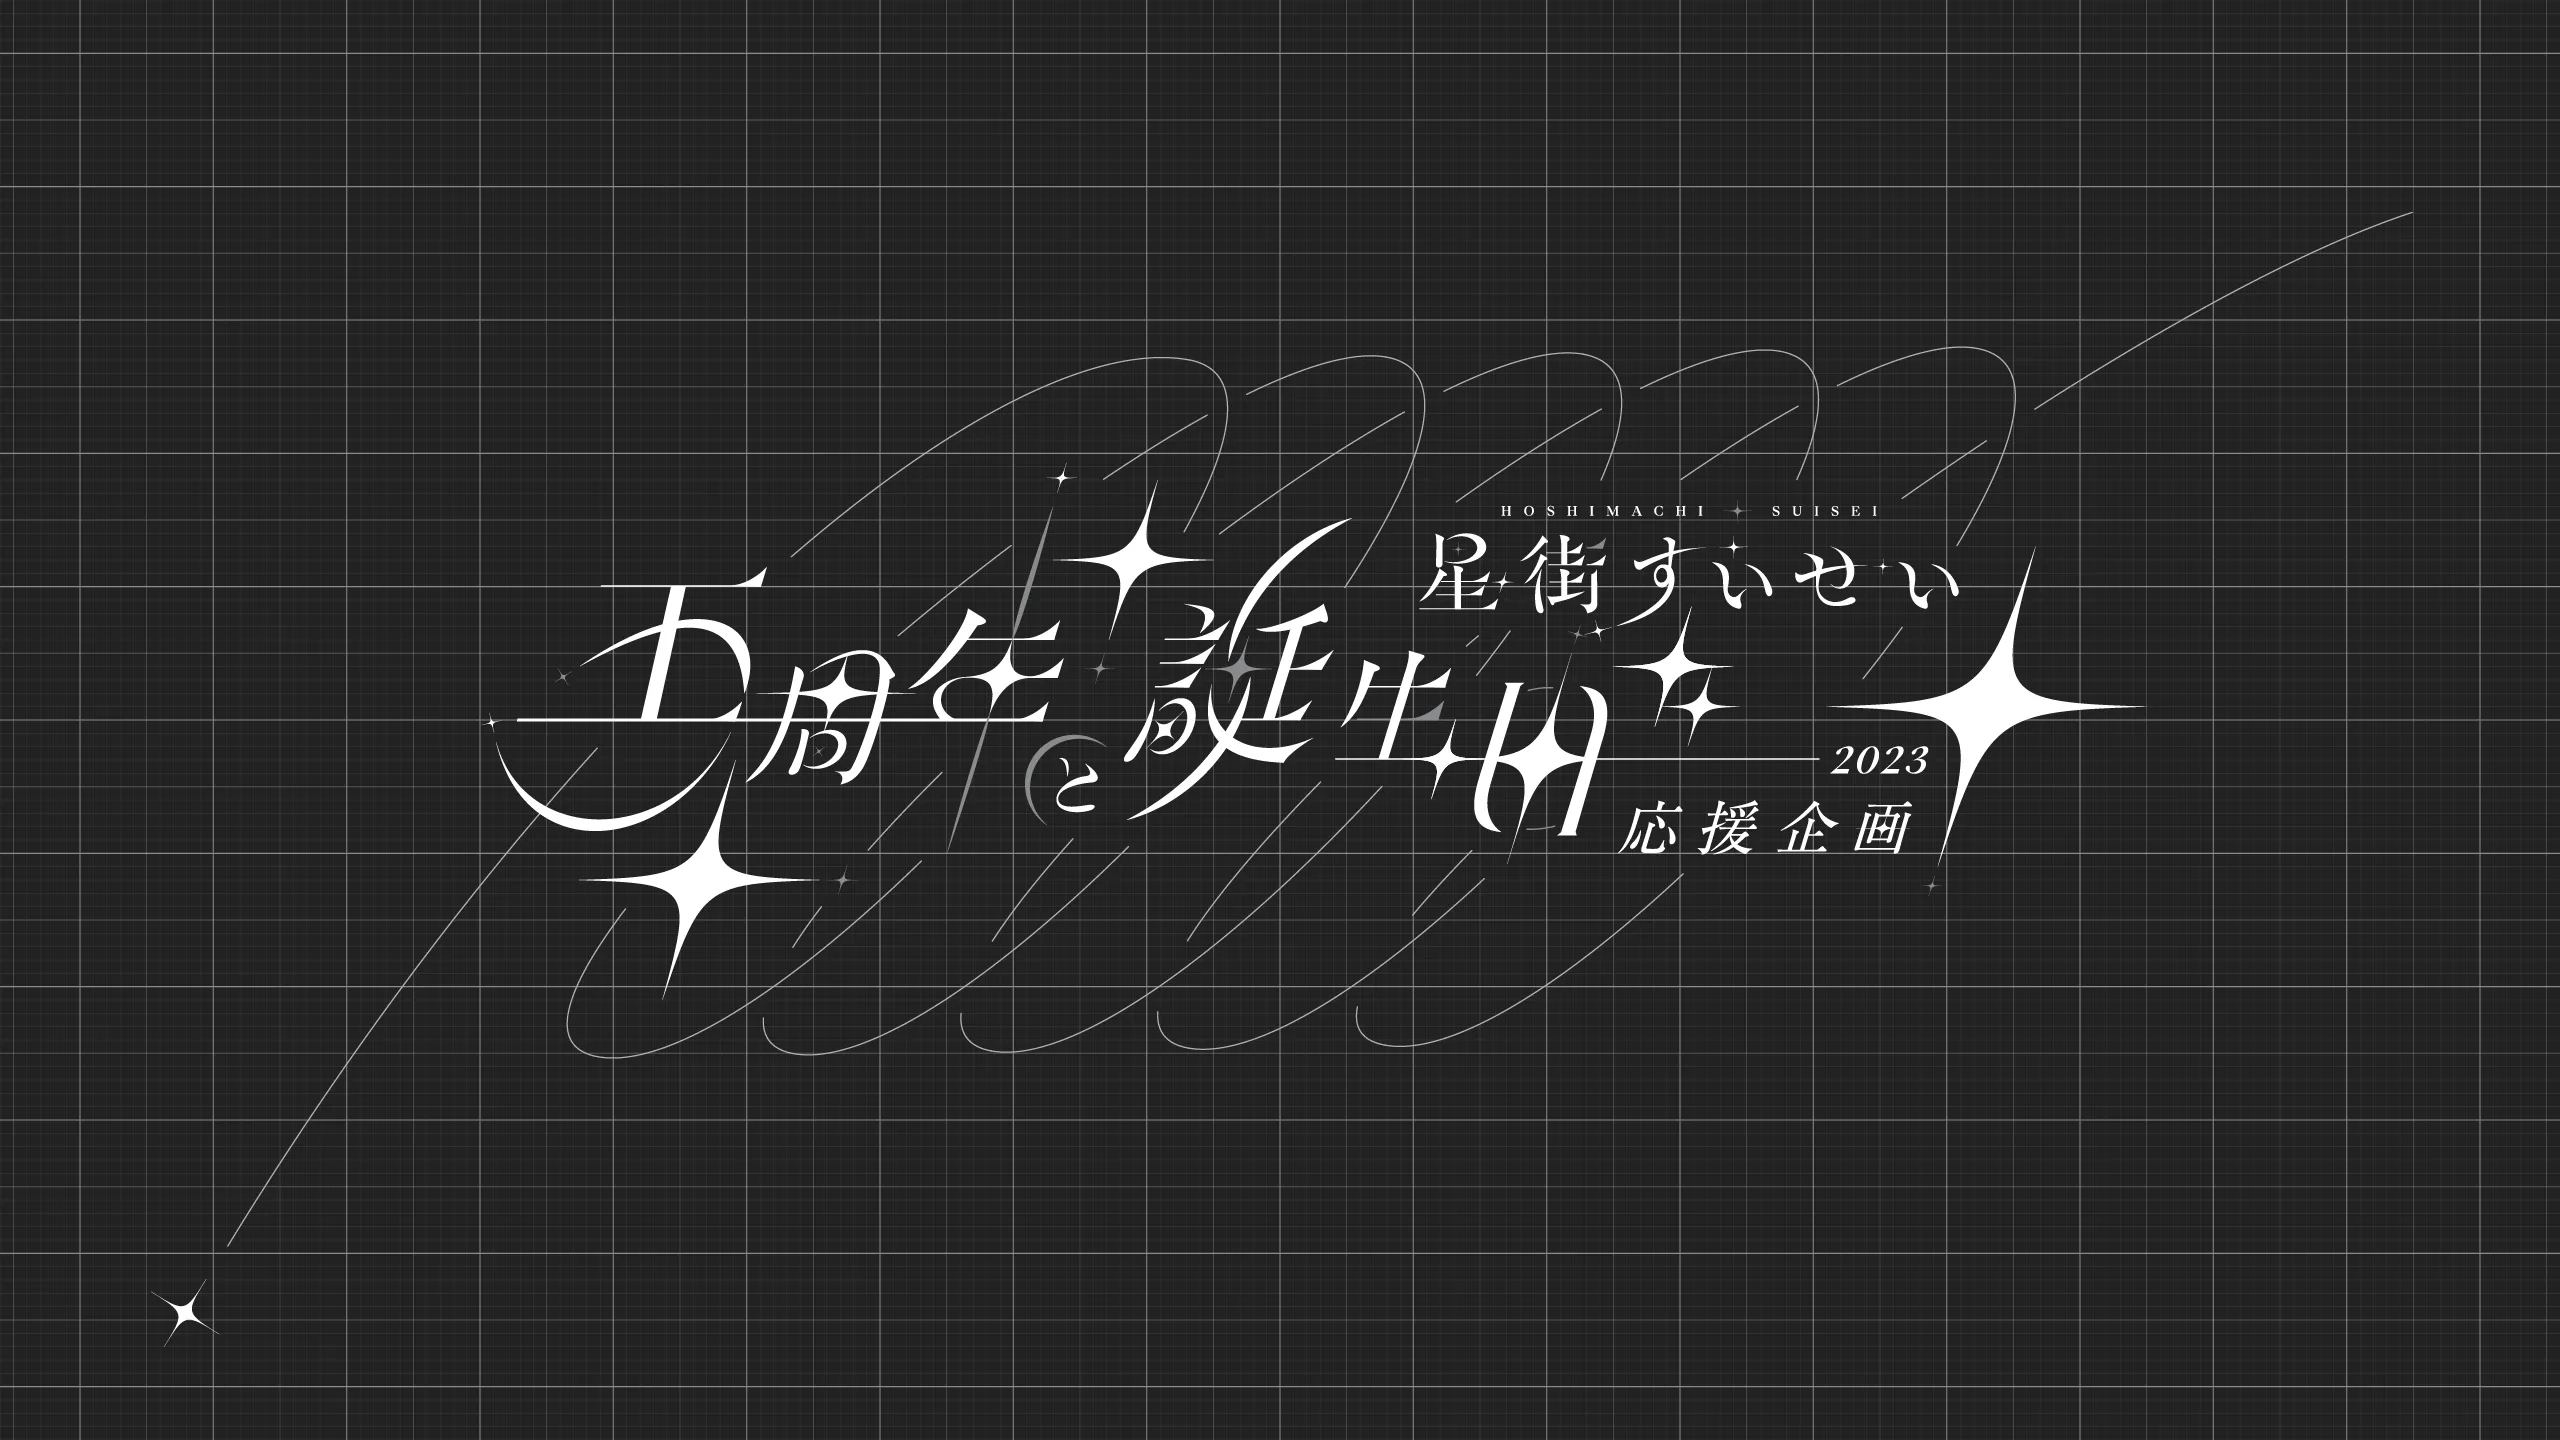 PRE-Suisei-2023-logo-Final-v2.3_Full-WTE_2560x